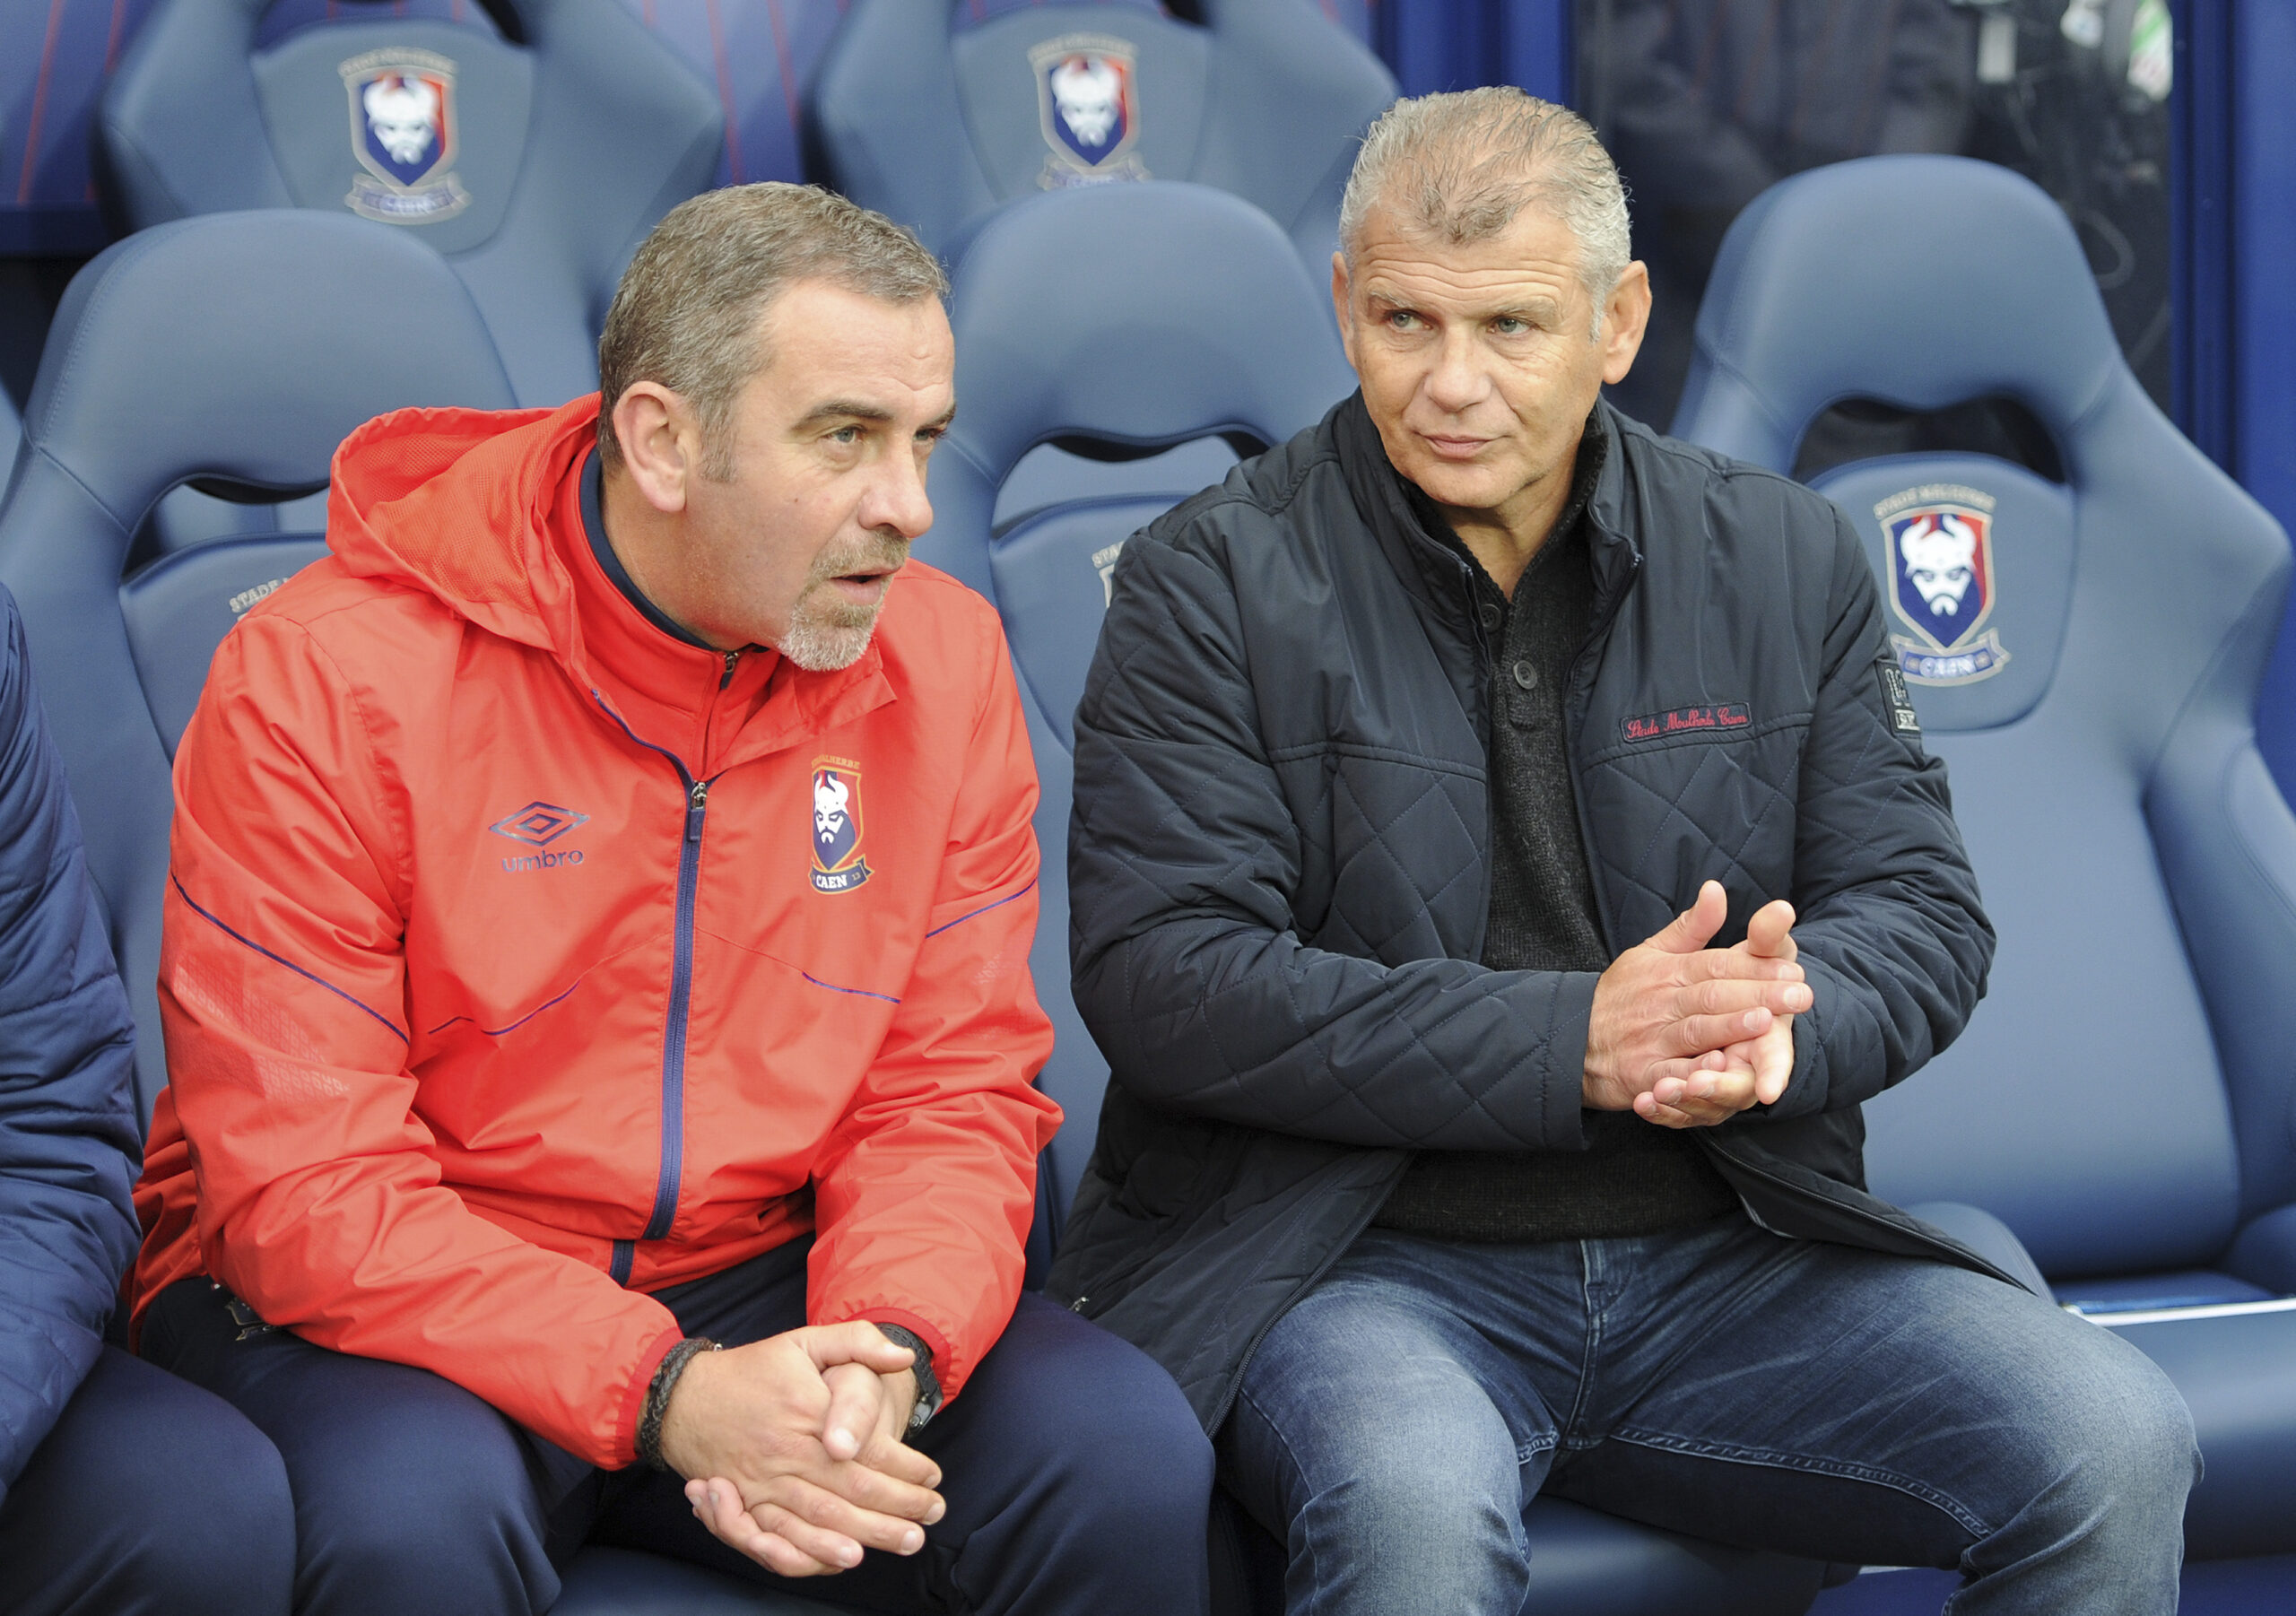 A Toulouse, Patrice Garande est arrivé avec Jean-Marie Huriez, son fidèle adjoint, dans ses bagages. Alors qu'ils s'étaient connus à Cherbourg, à l'époque le premier était déjà entraîneur et le second encore joueur, les deux hommes avaient déjà collaborés ensemble durant cinq saisons au Stade Malherbe (2013-2018).